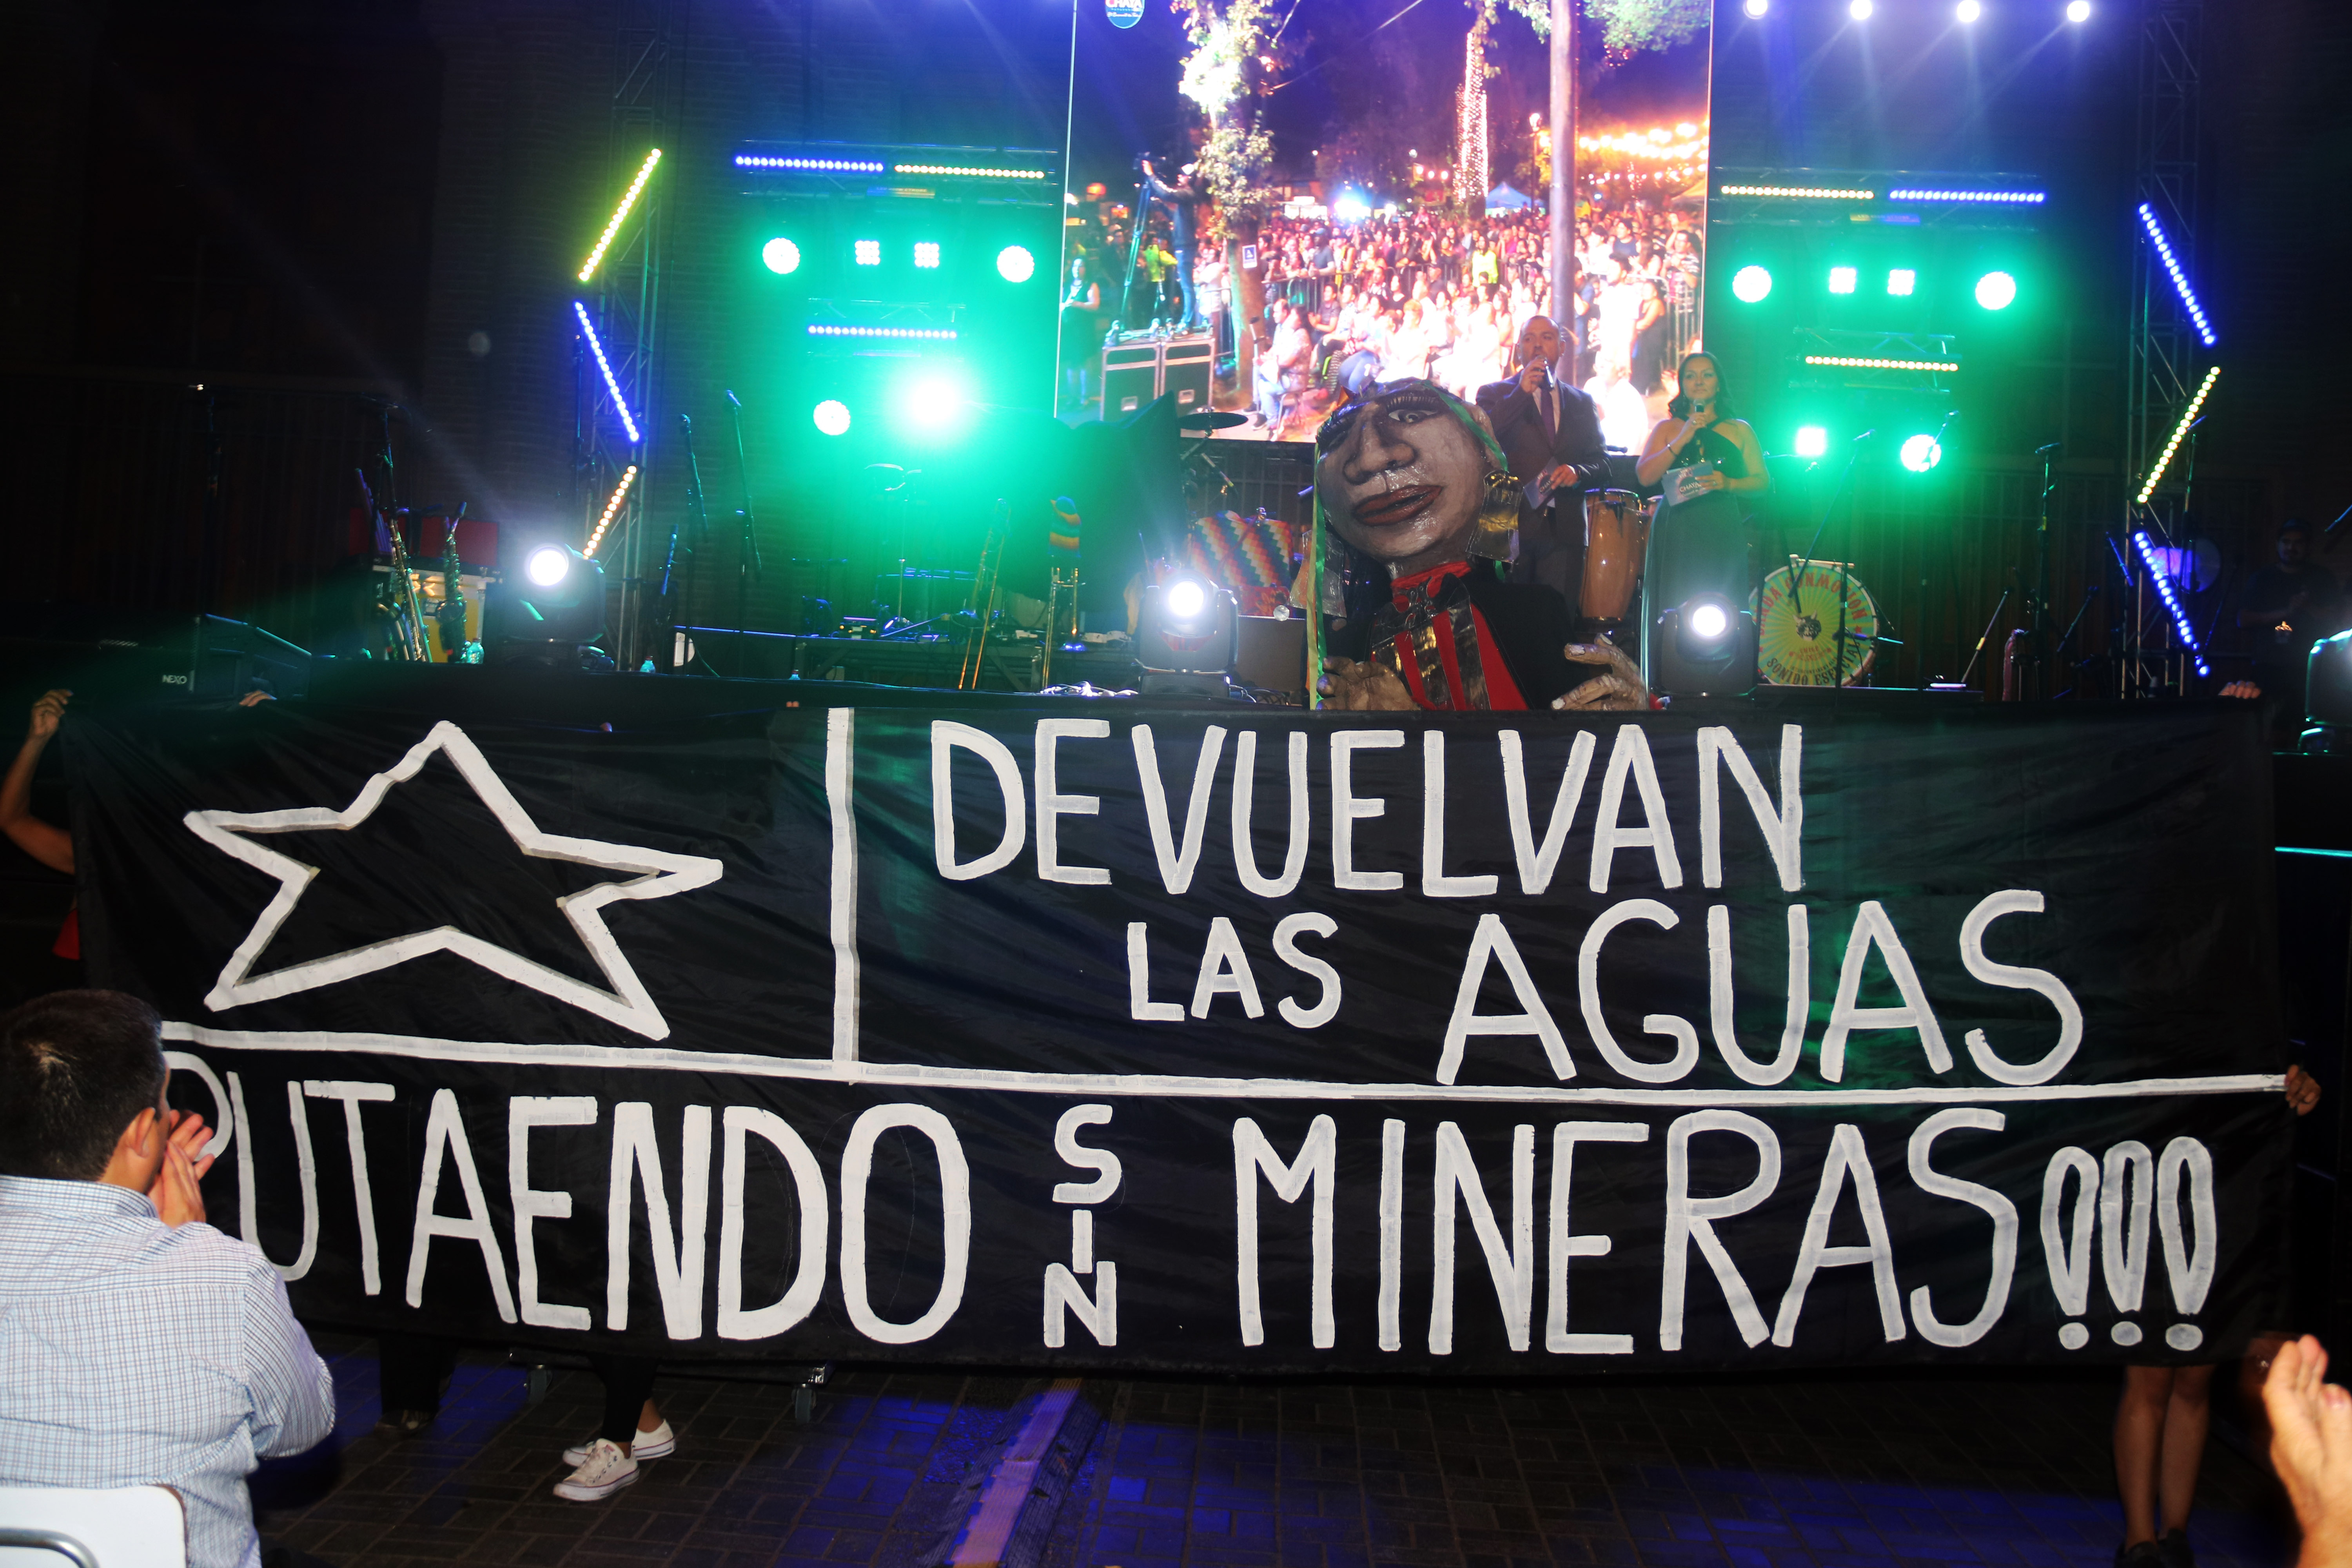 Las demandas sociales de Chile y de Putaendo han llegado hasta el escenario de la Chaya